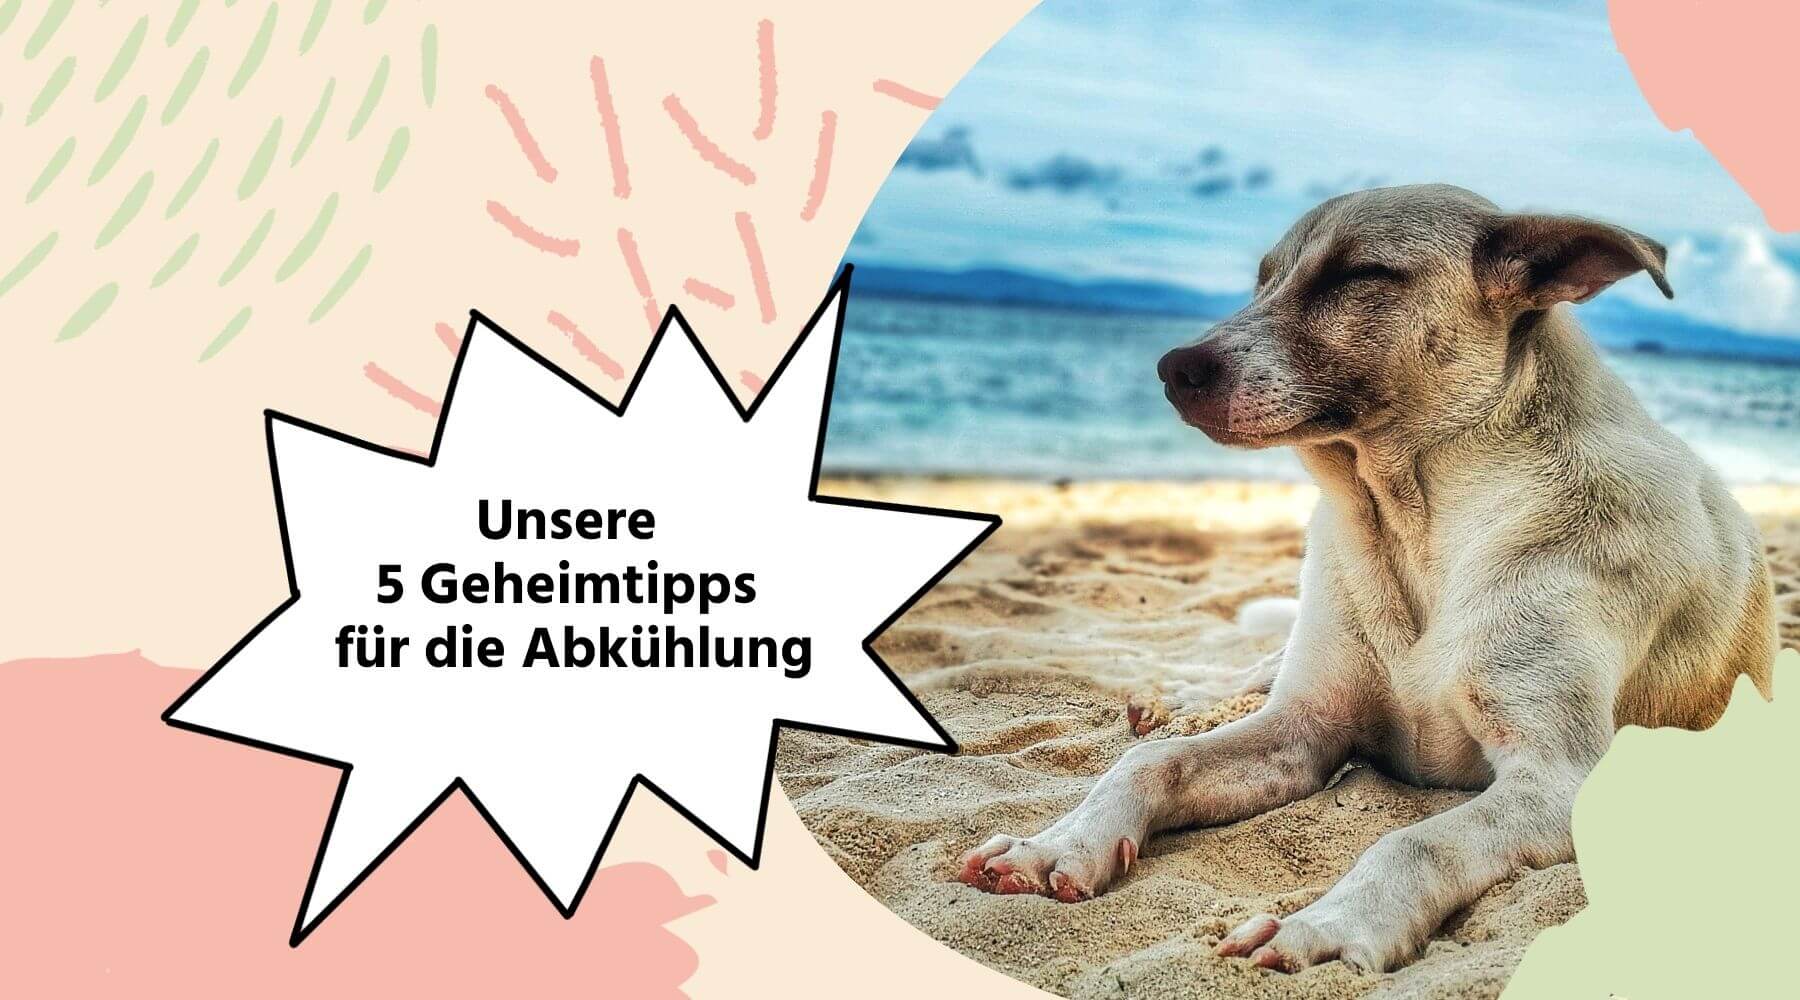 Hund liegt am Strand in der Sonne.